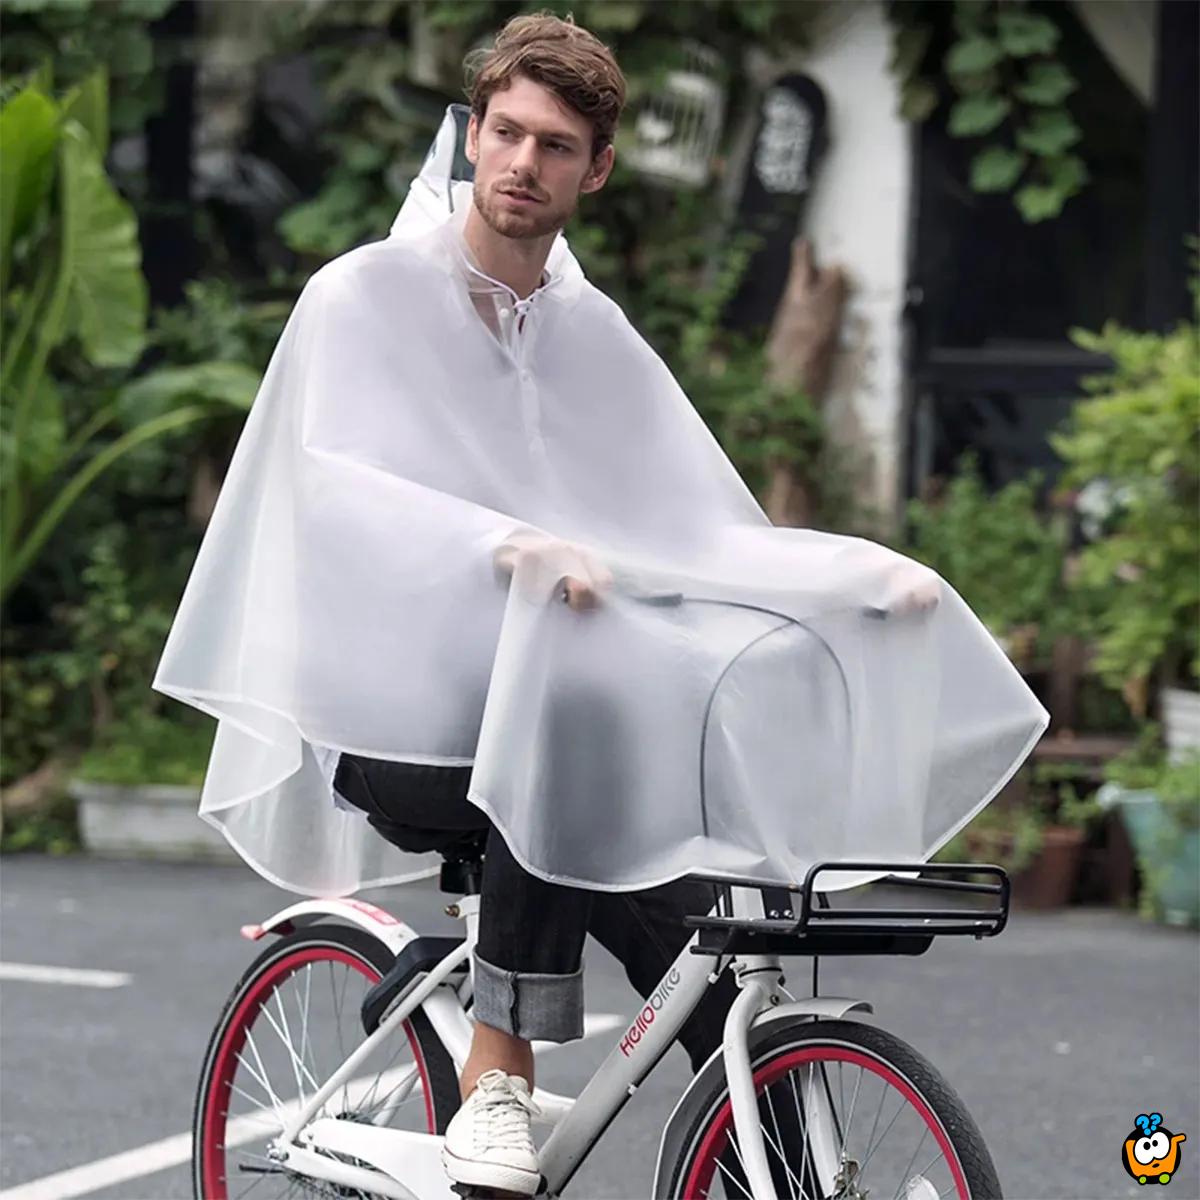 Motorcycle raincoat – Transparentna kabanica za vožnju - small size